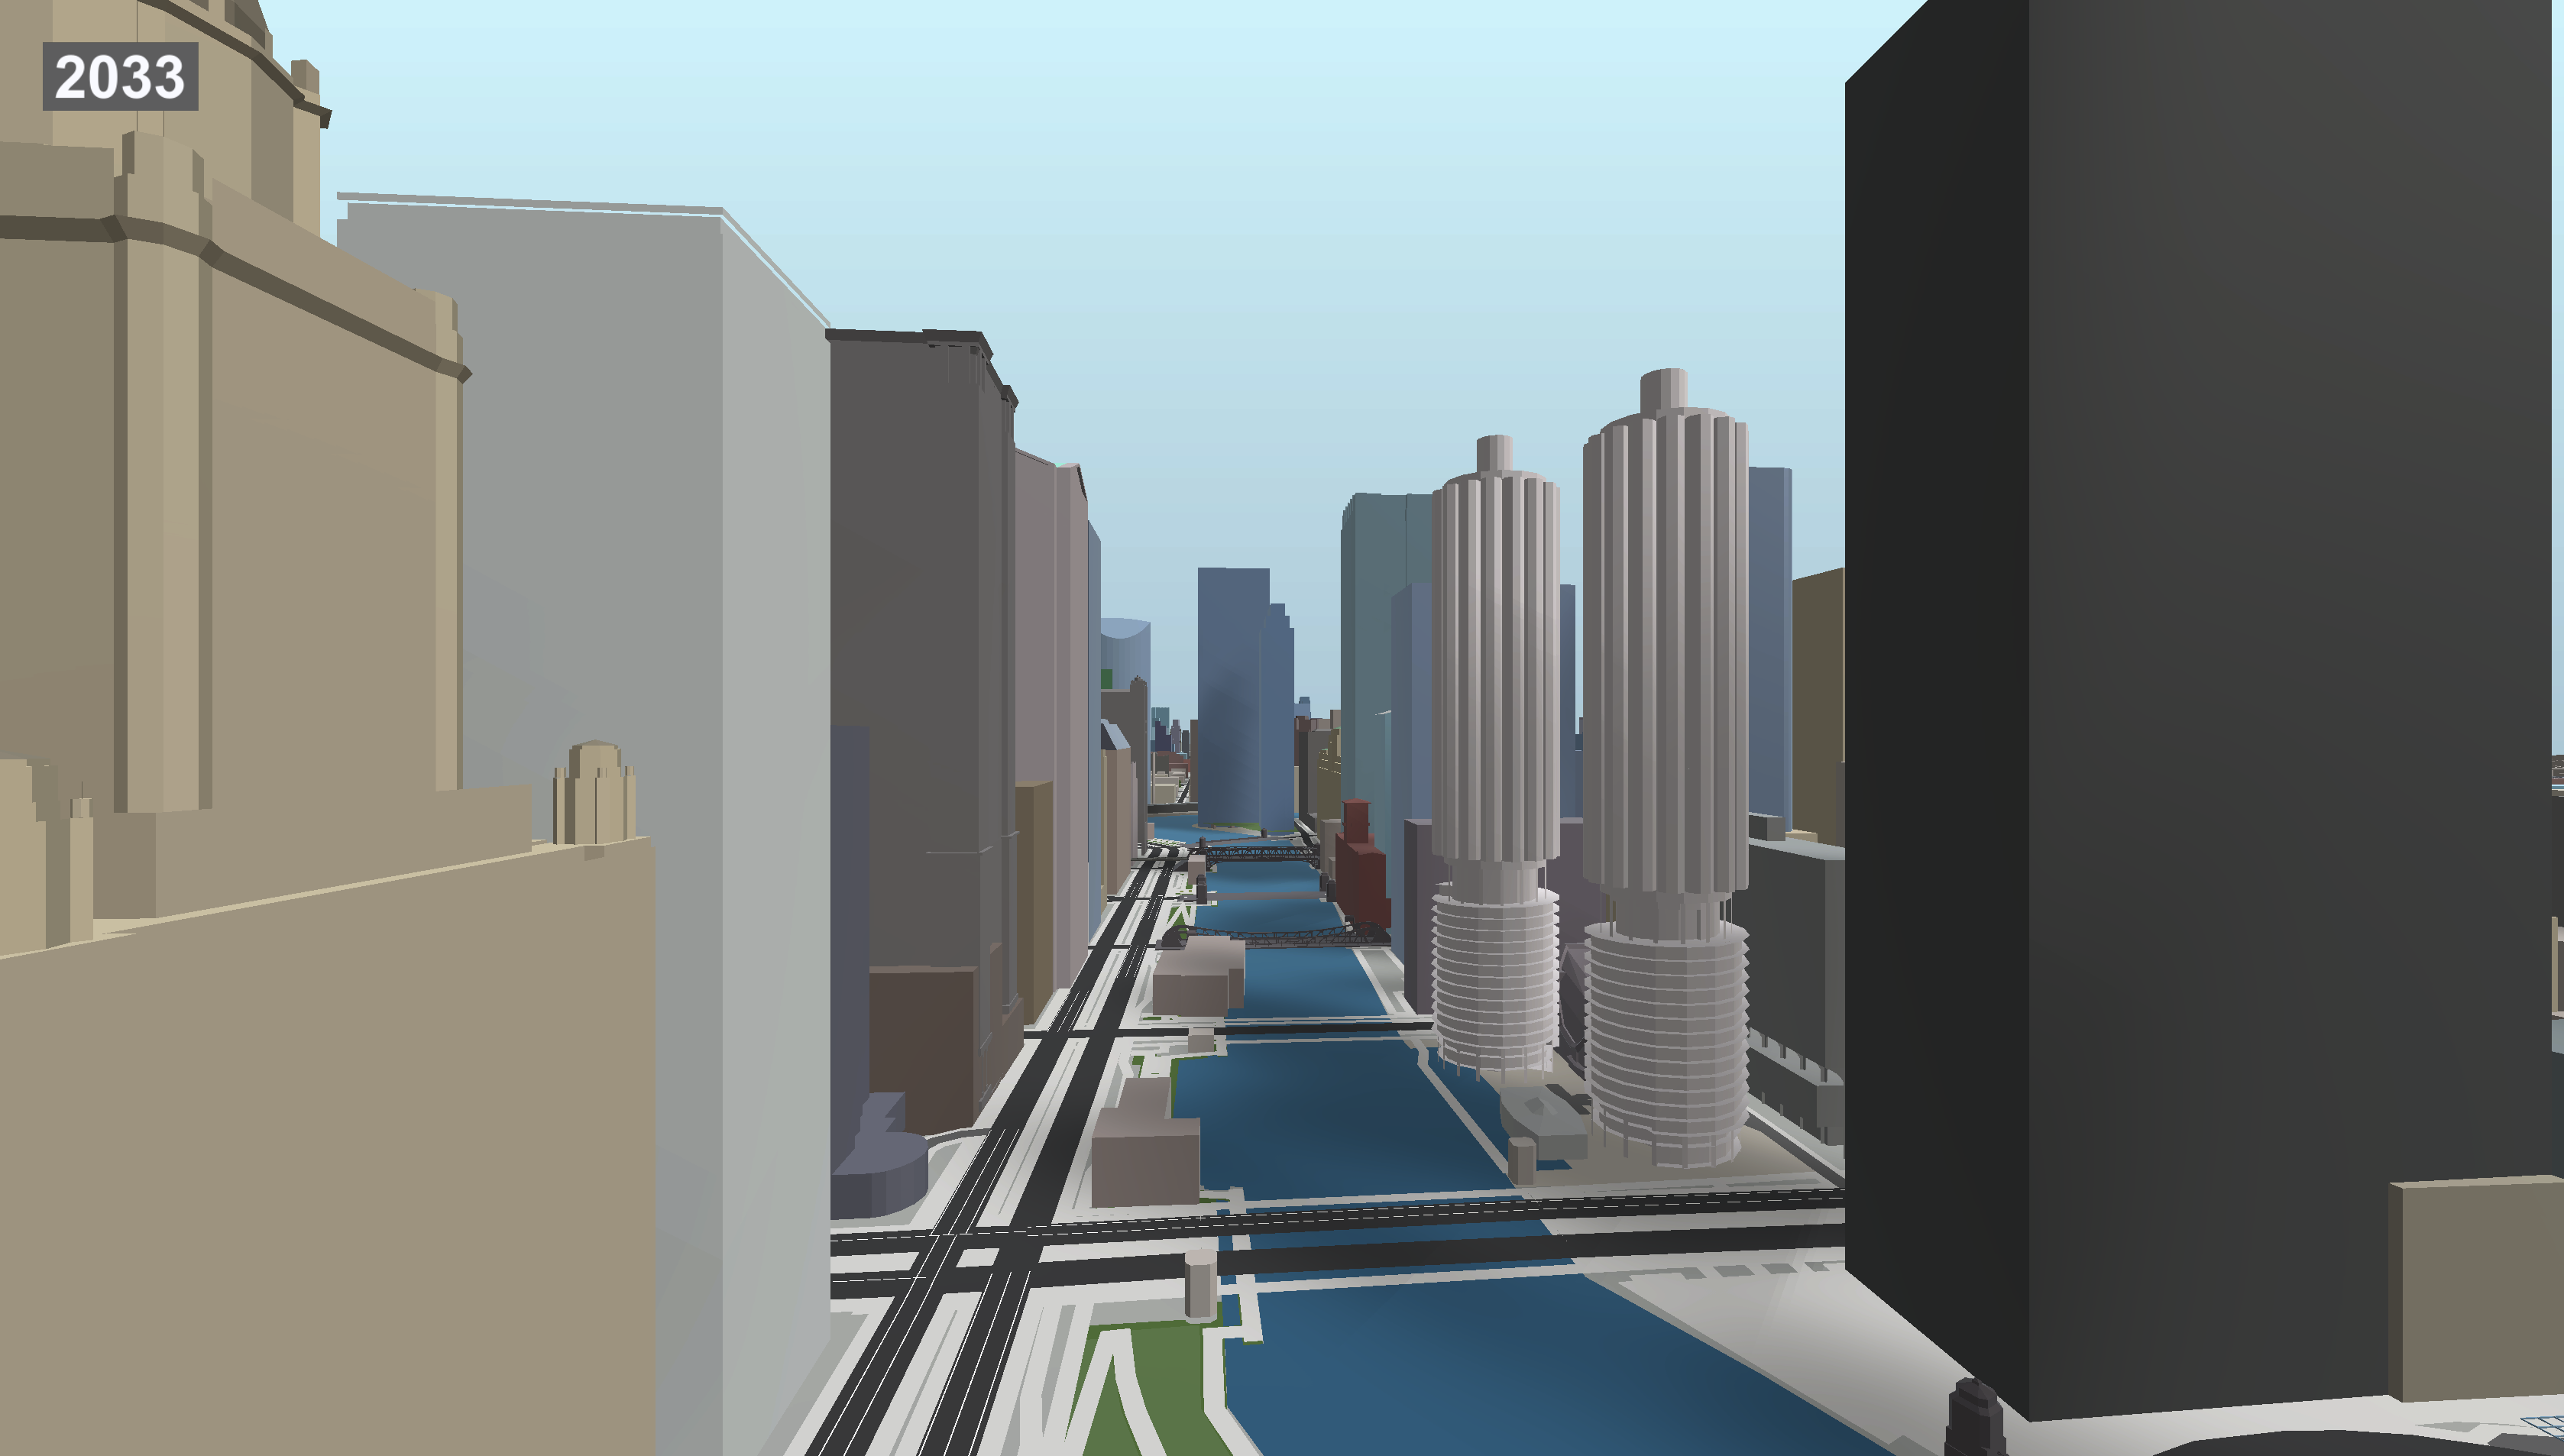 Marina City in 2033